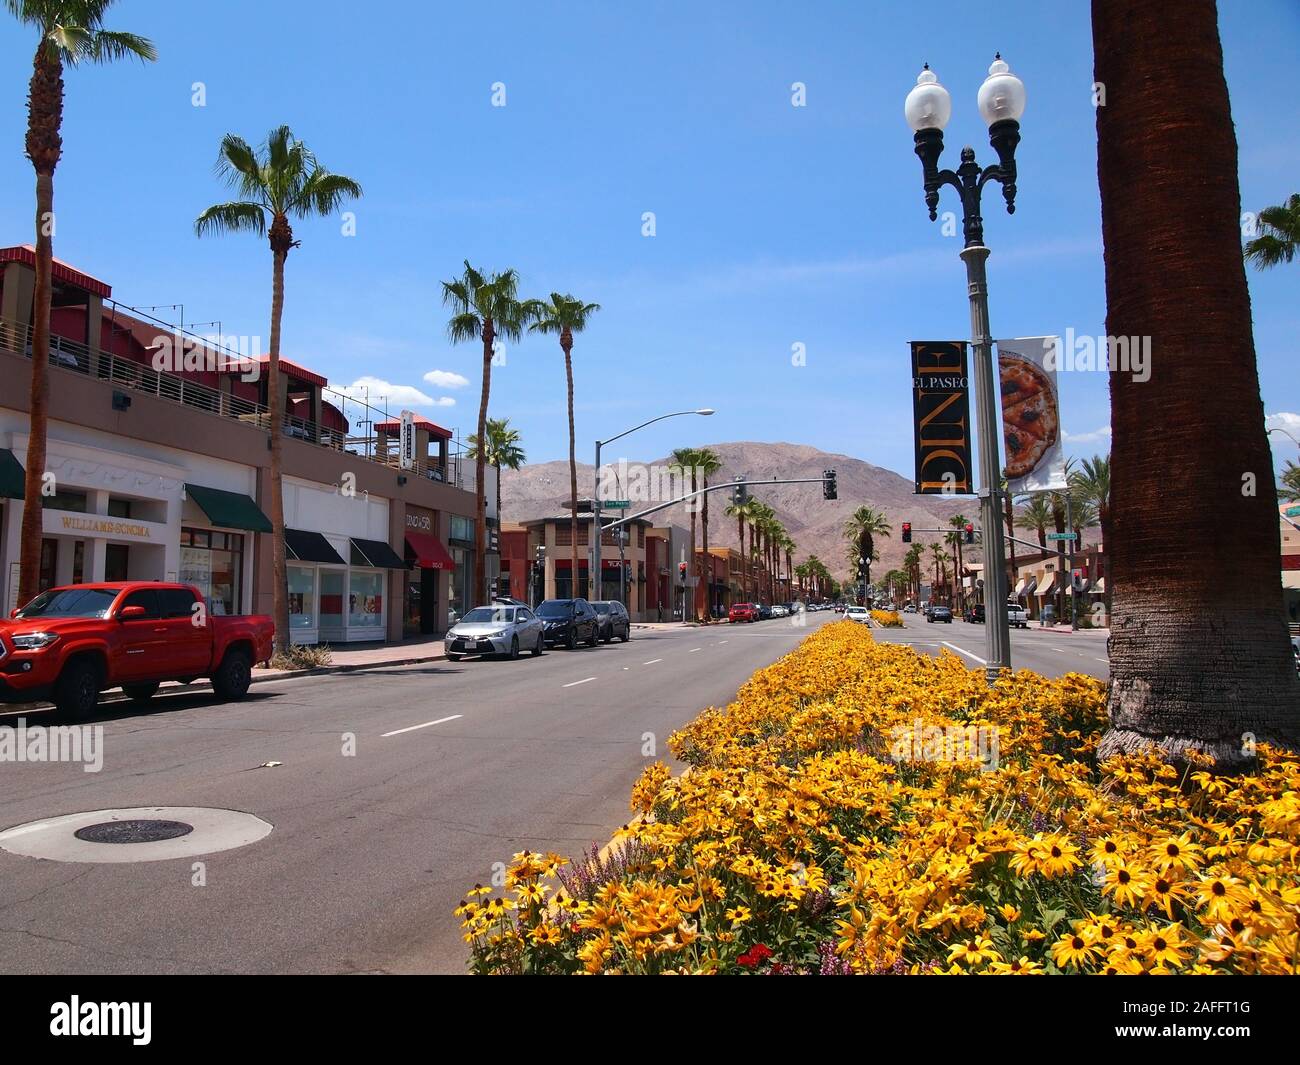 PALM DESERT, CA - Julio 16, 2018: Una escena callejera en medio del popular distrito comercial El Paseo en el área de Palm Desert Palm Springs, California Foto de stock